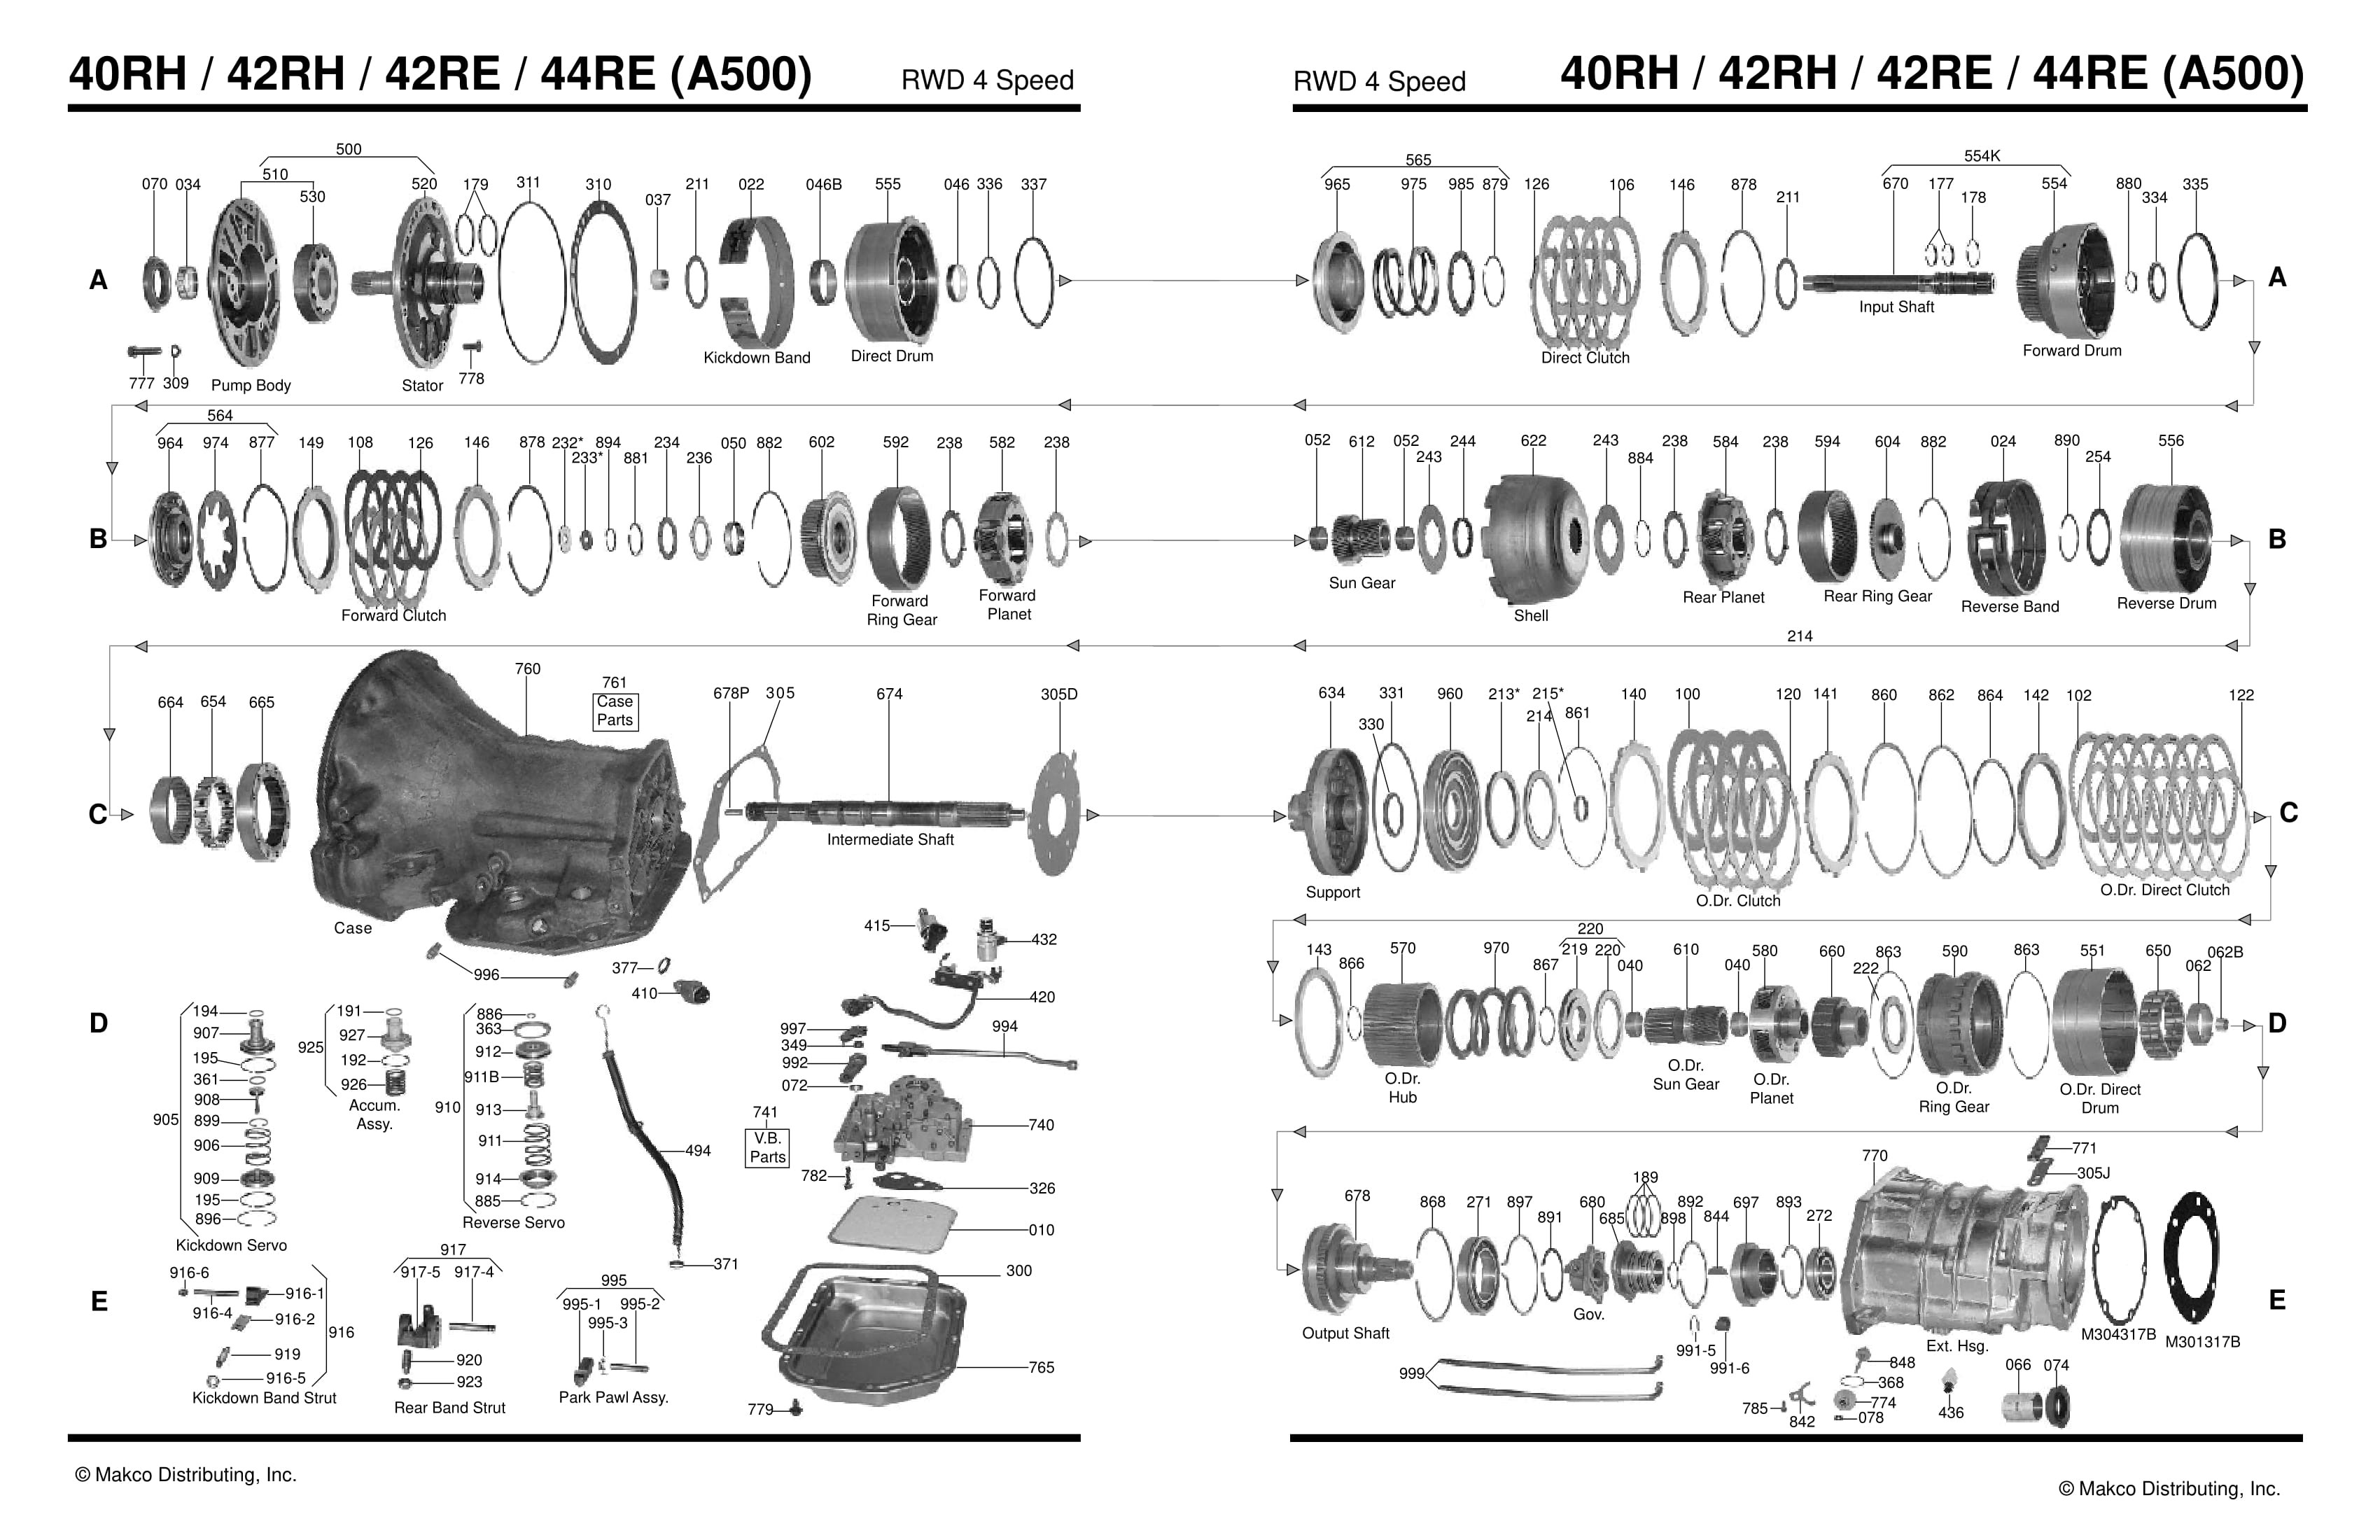 Automatic Transmission Parts Diagram 42re Transmission Parts Diagram Wiring Diagram New